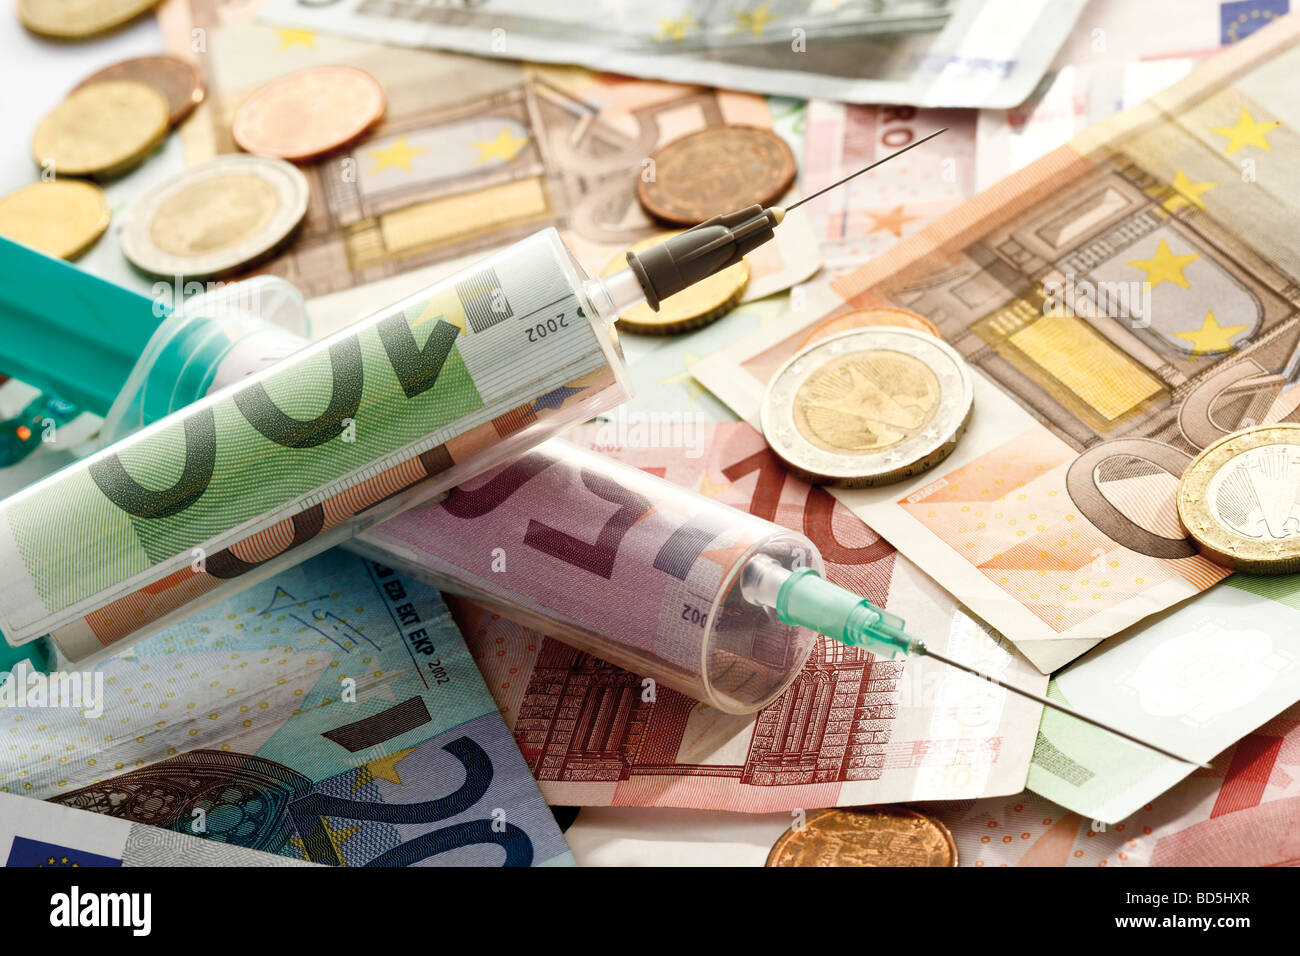 Los billetes de banco, monedas, jeringas, imagen simbólica para inyectar dinero Foto de stock